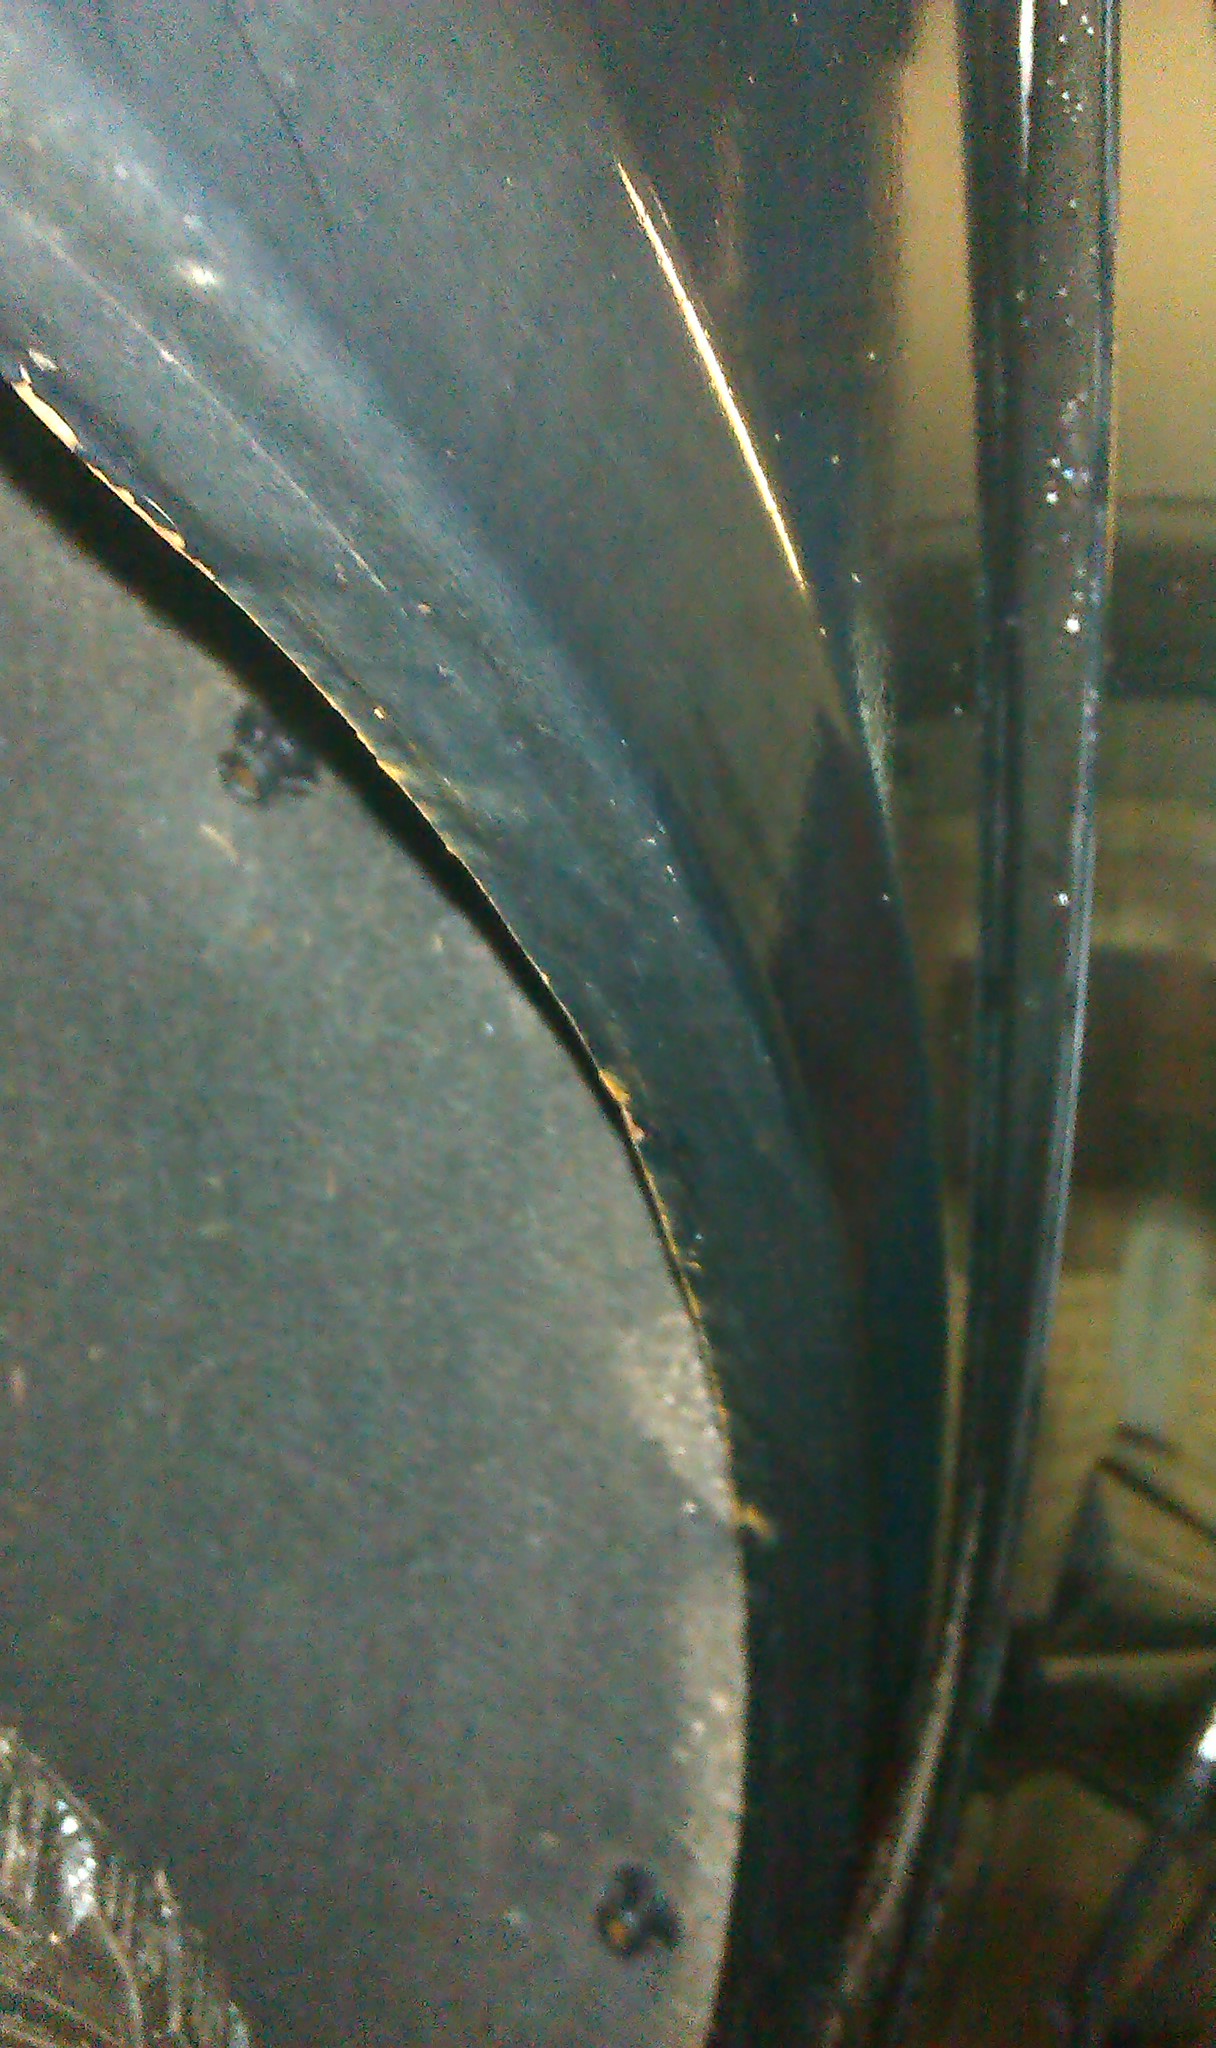 Колесная арка автомобиля, пострадавшая от гравия и песка, летящего из-под колес